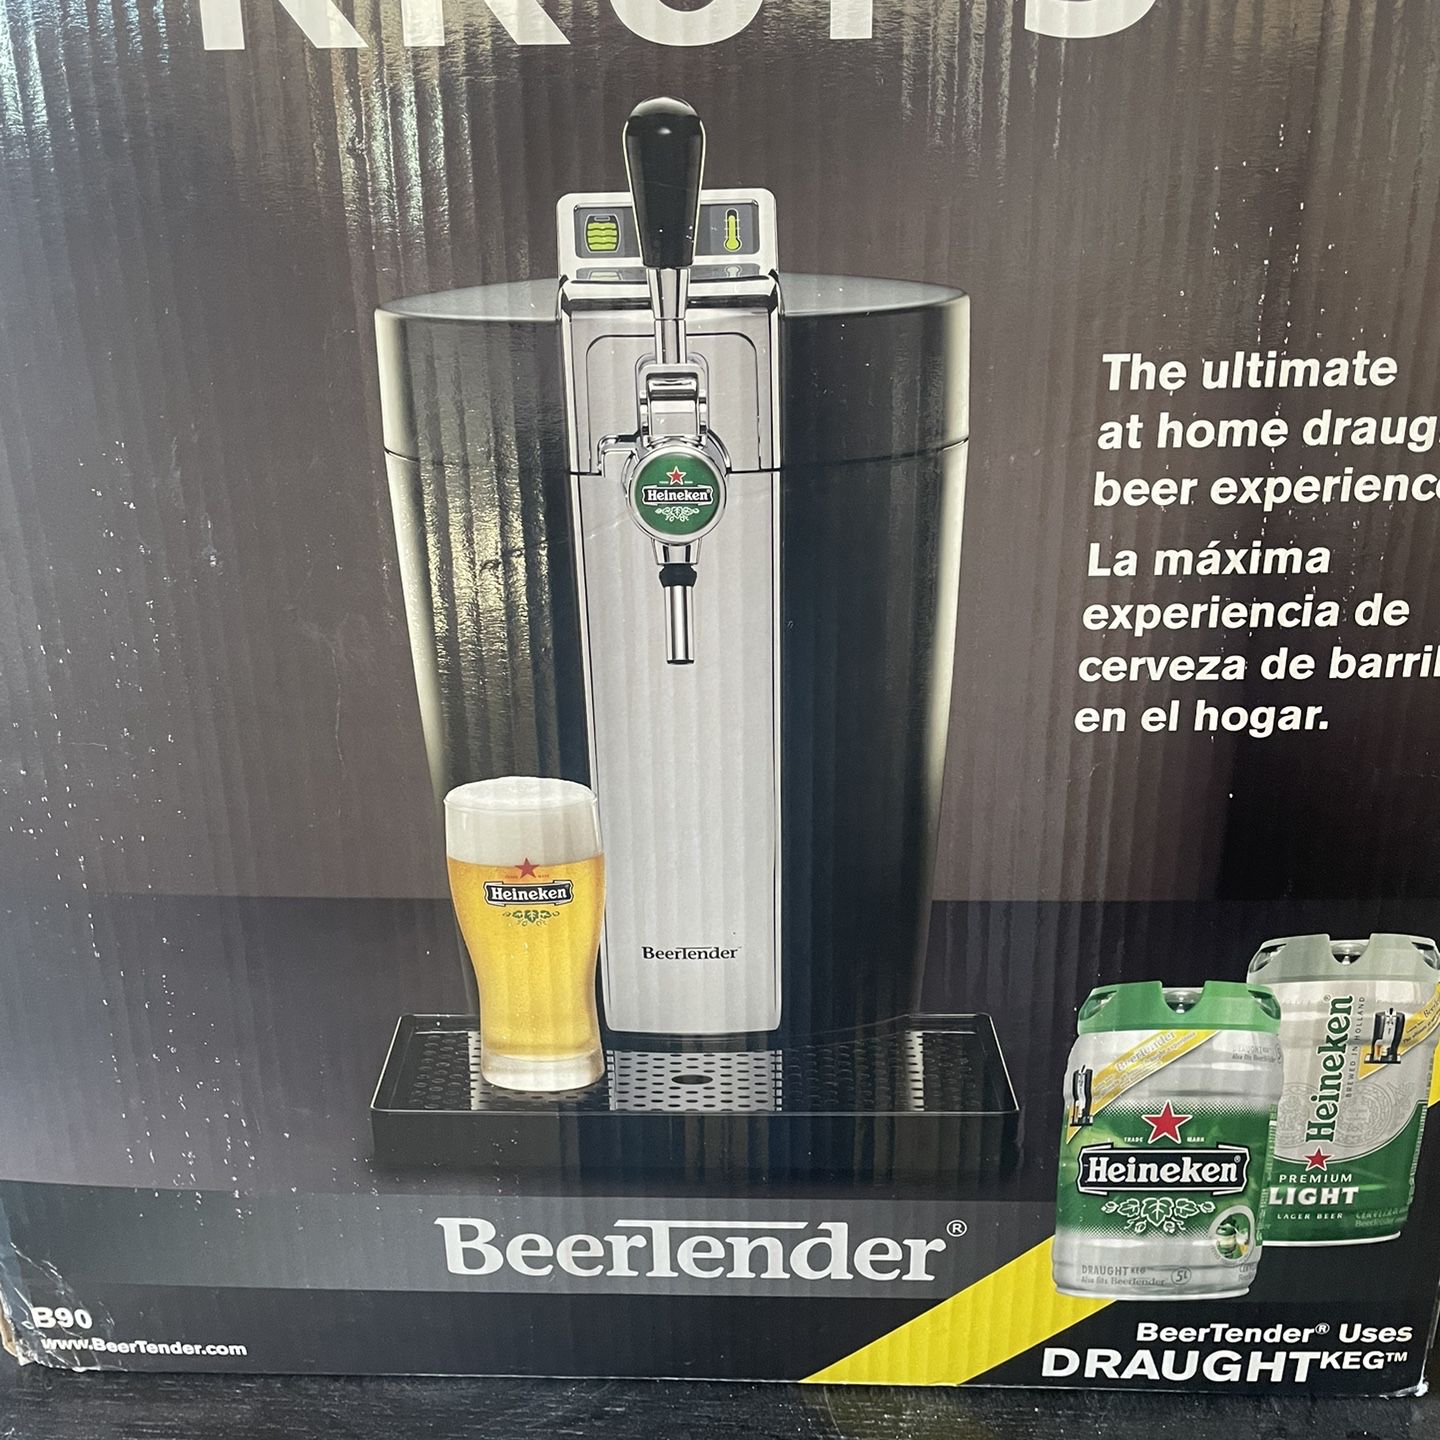 Beer Tender